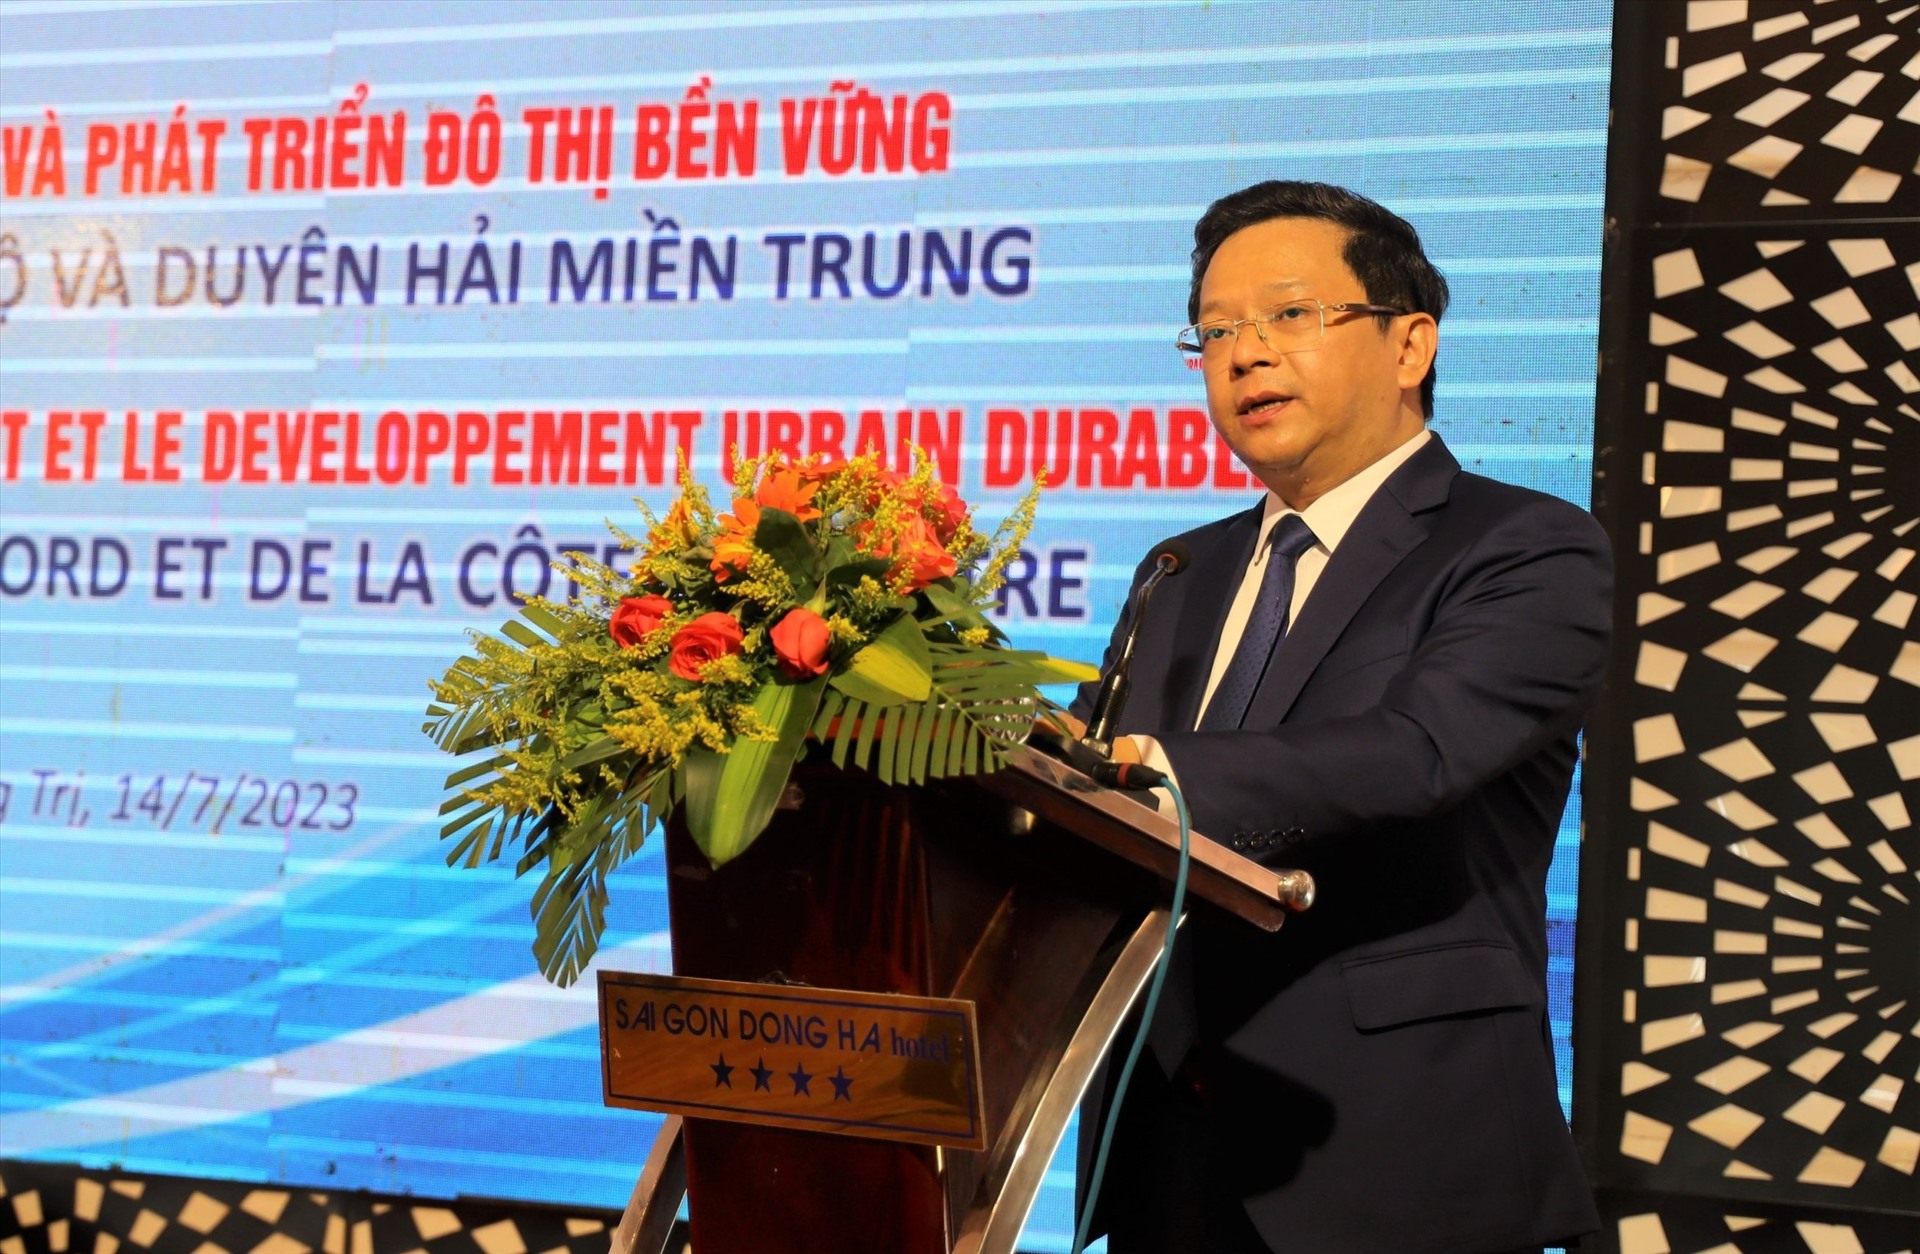 Ông Nguyễn Đức Hiển, Phó Trưởng Ban Kinh tế Trung ương chỉ ra những thách thức của Vùng bắc Trung Bộ và duyên hải miền Trung. Ảnh Thành Trung